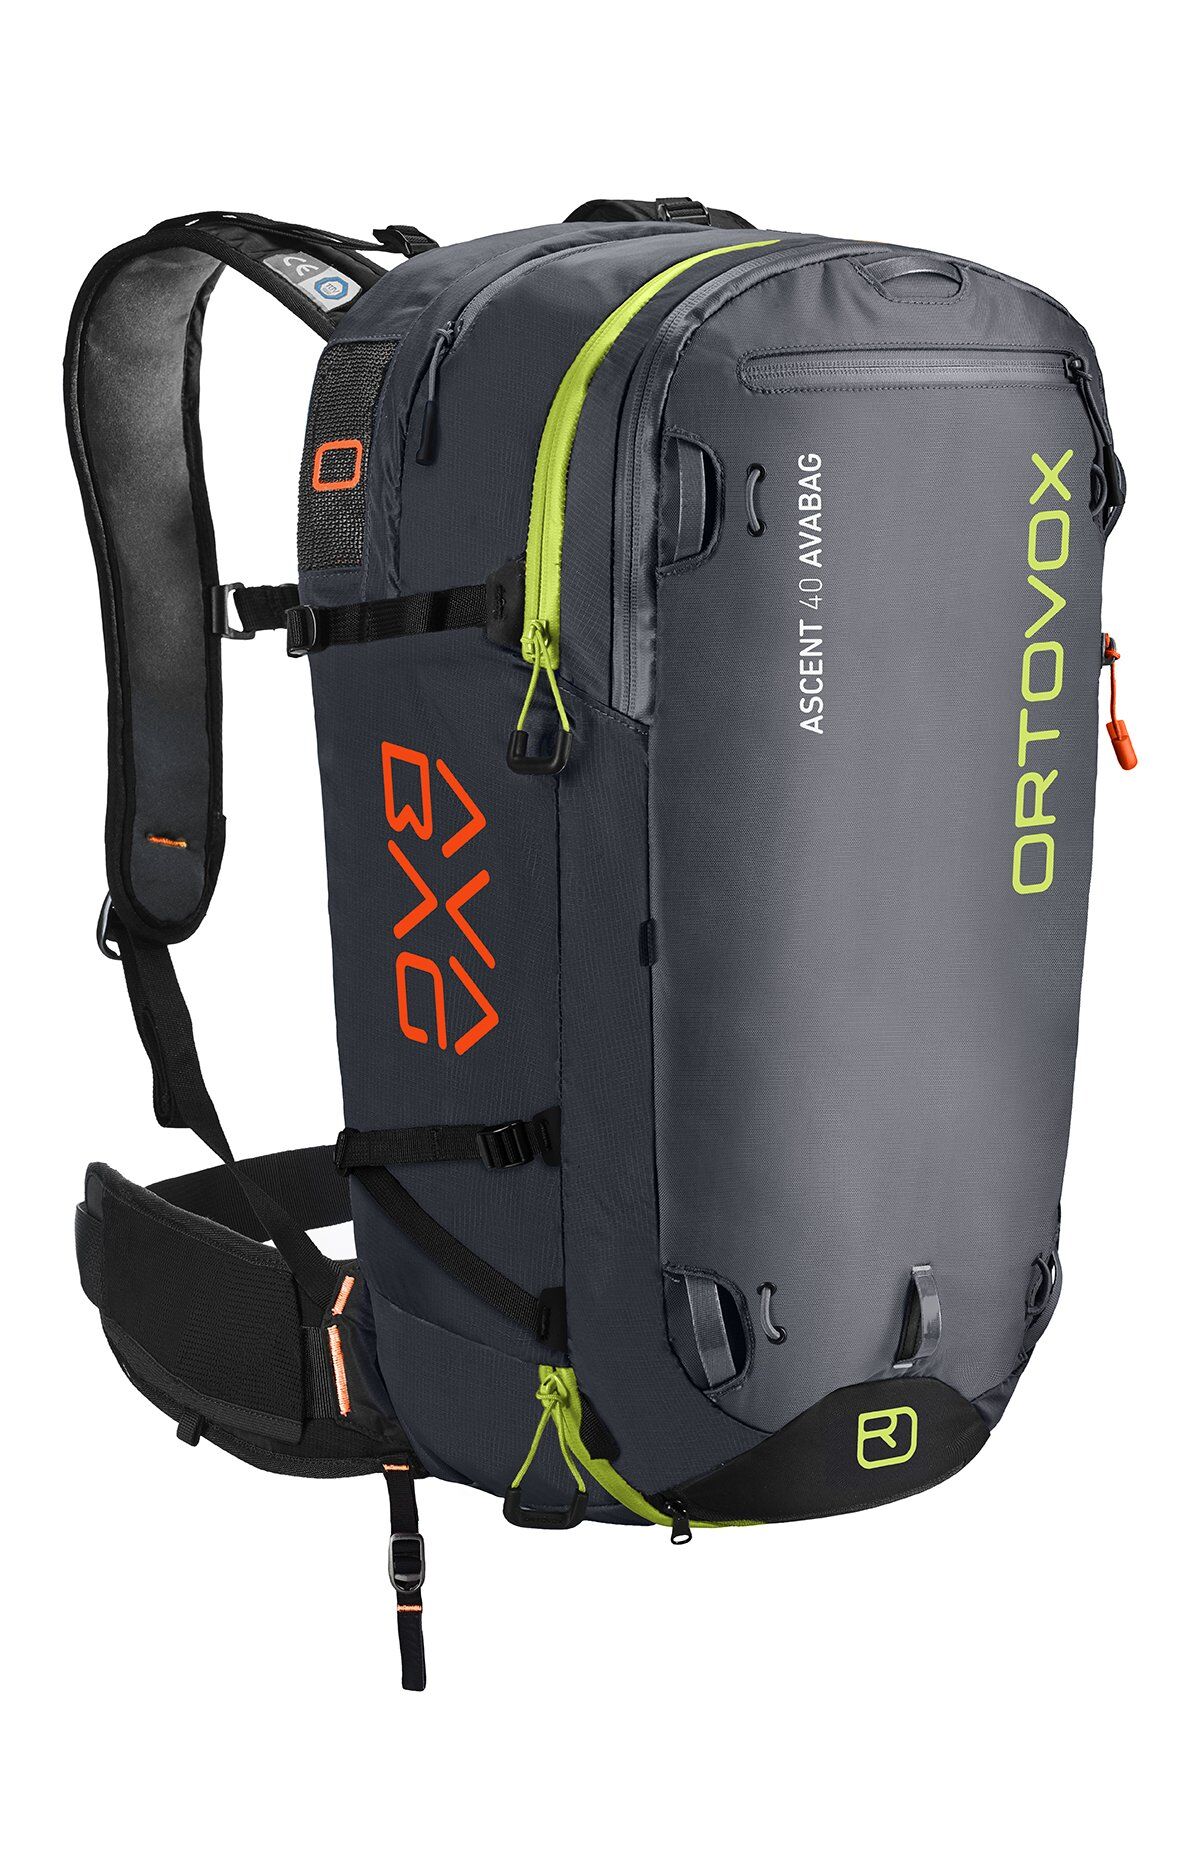 Ortovox - Ascent 40 Avabag - Avalanche backpack - Men's